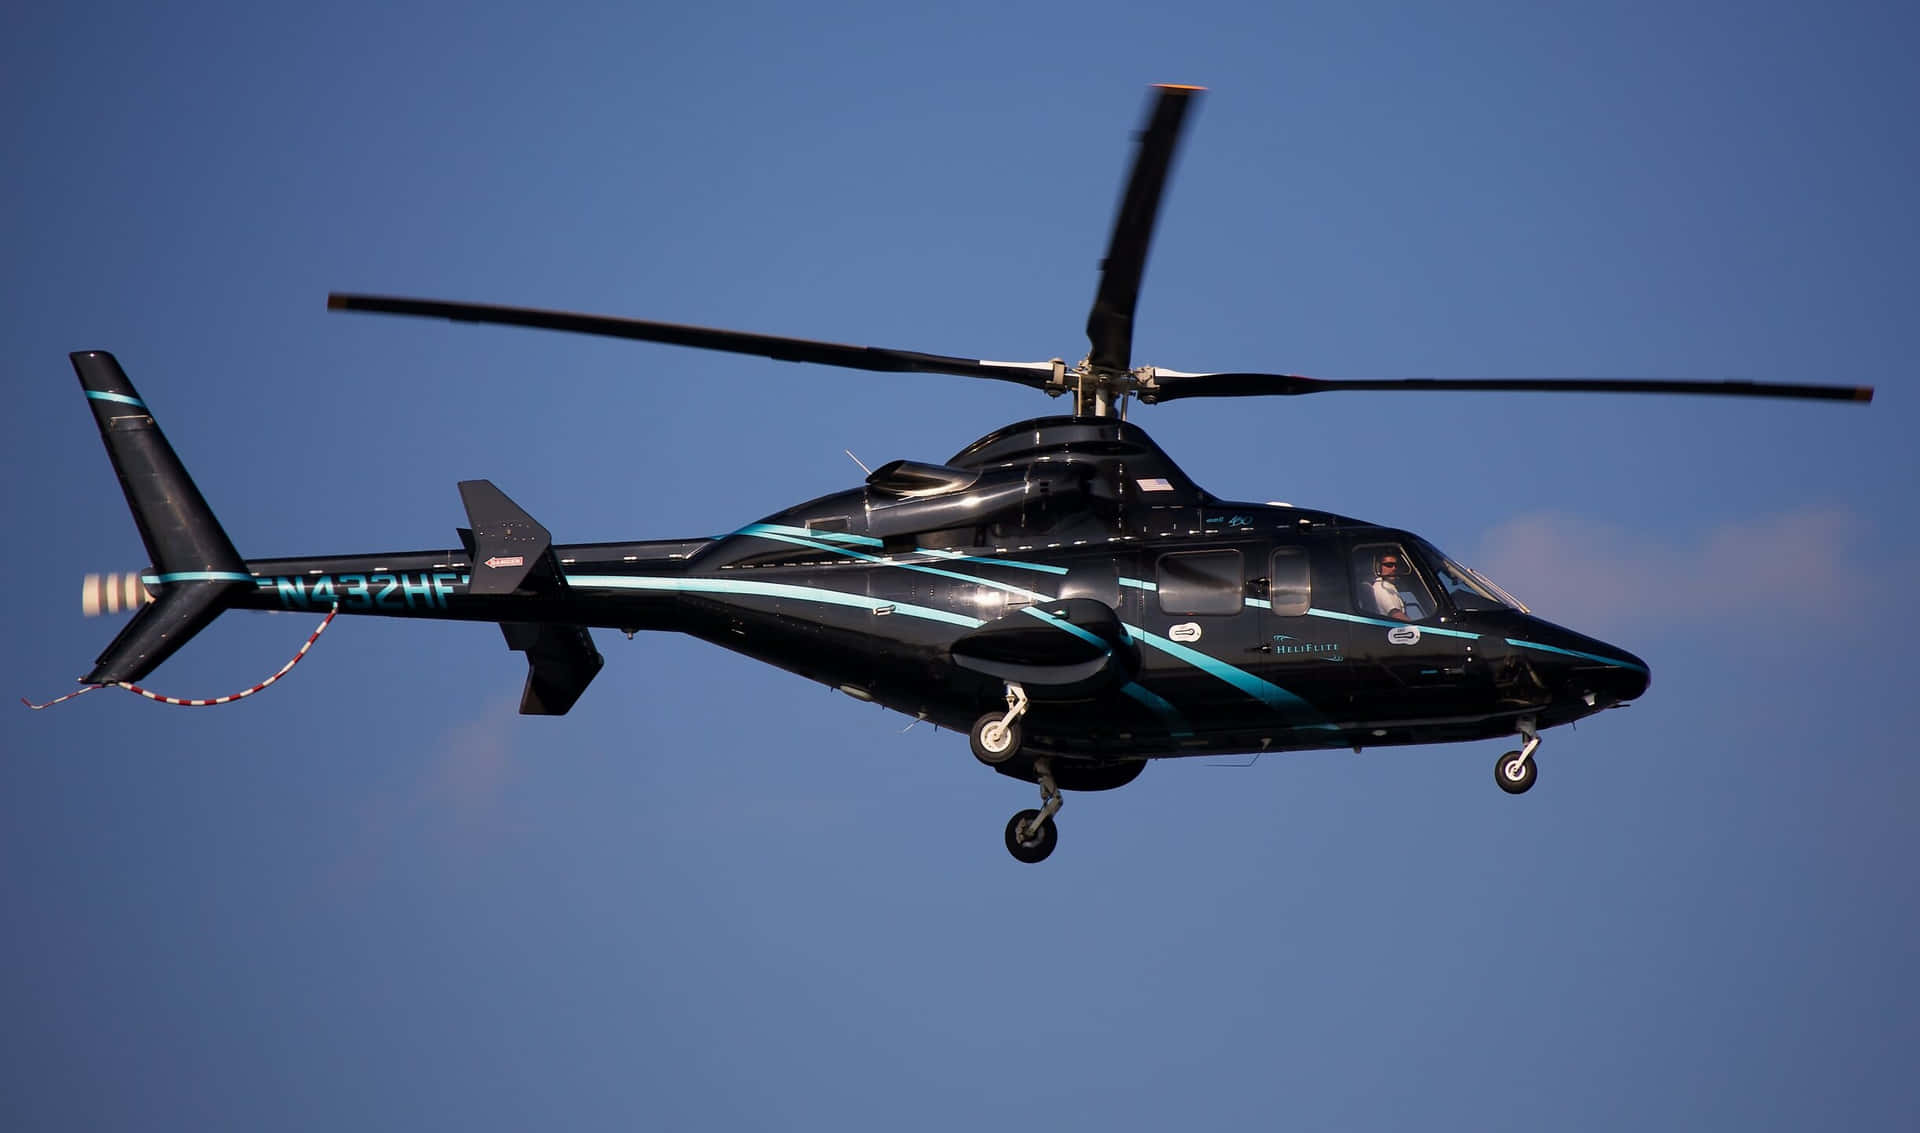 Doshelicópteros En Un Cielo Gris Con Un Mar Azul Vibrante En El Fondo.